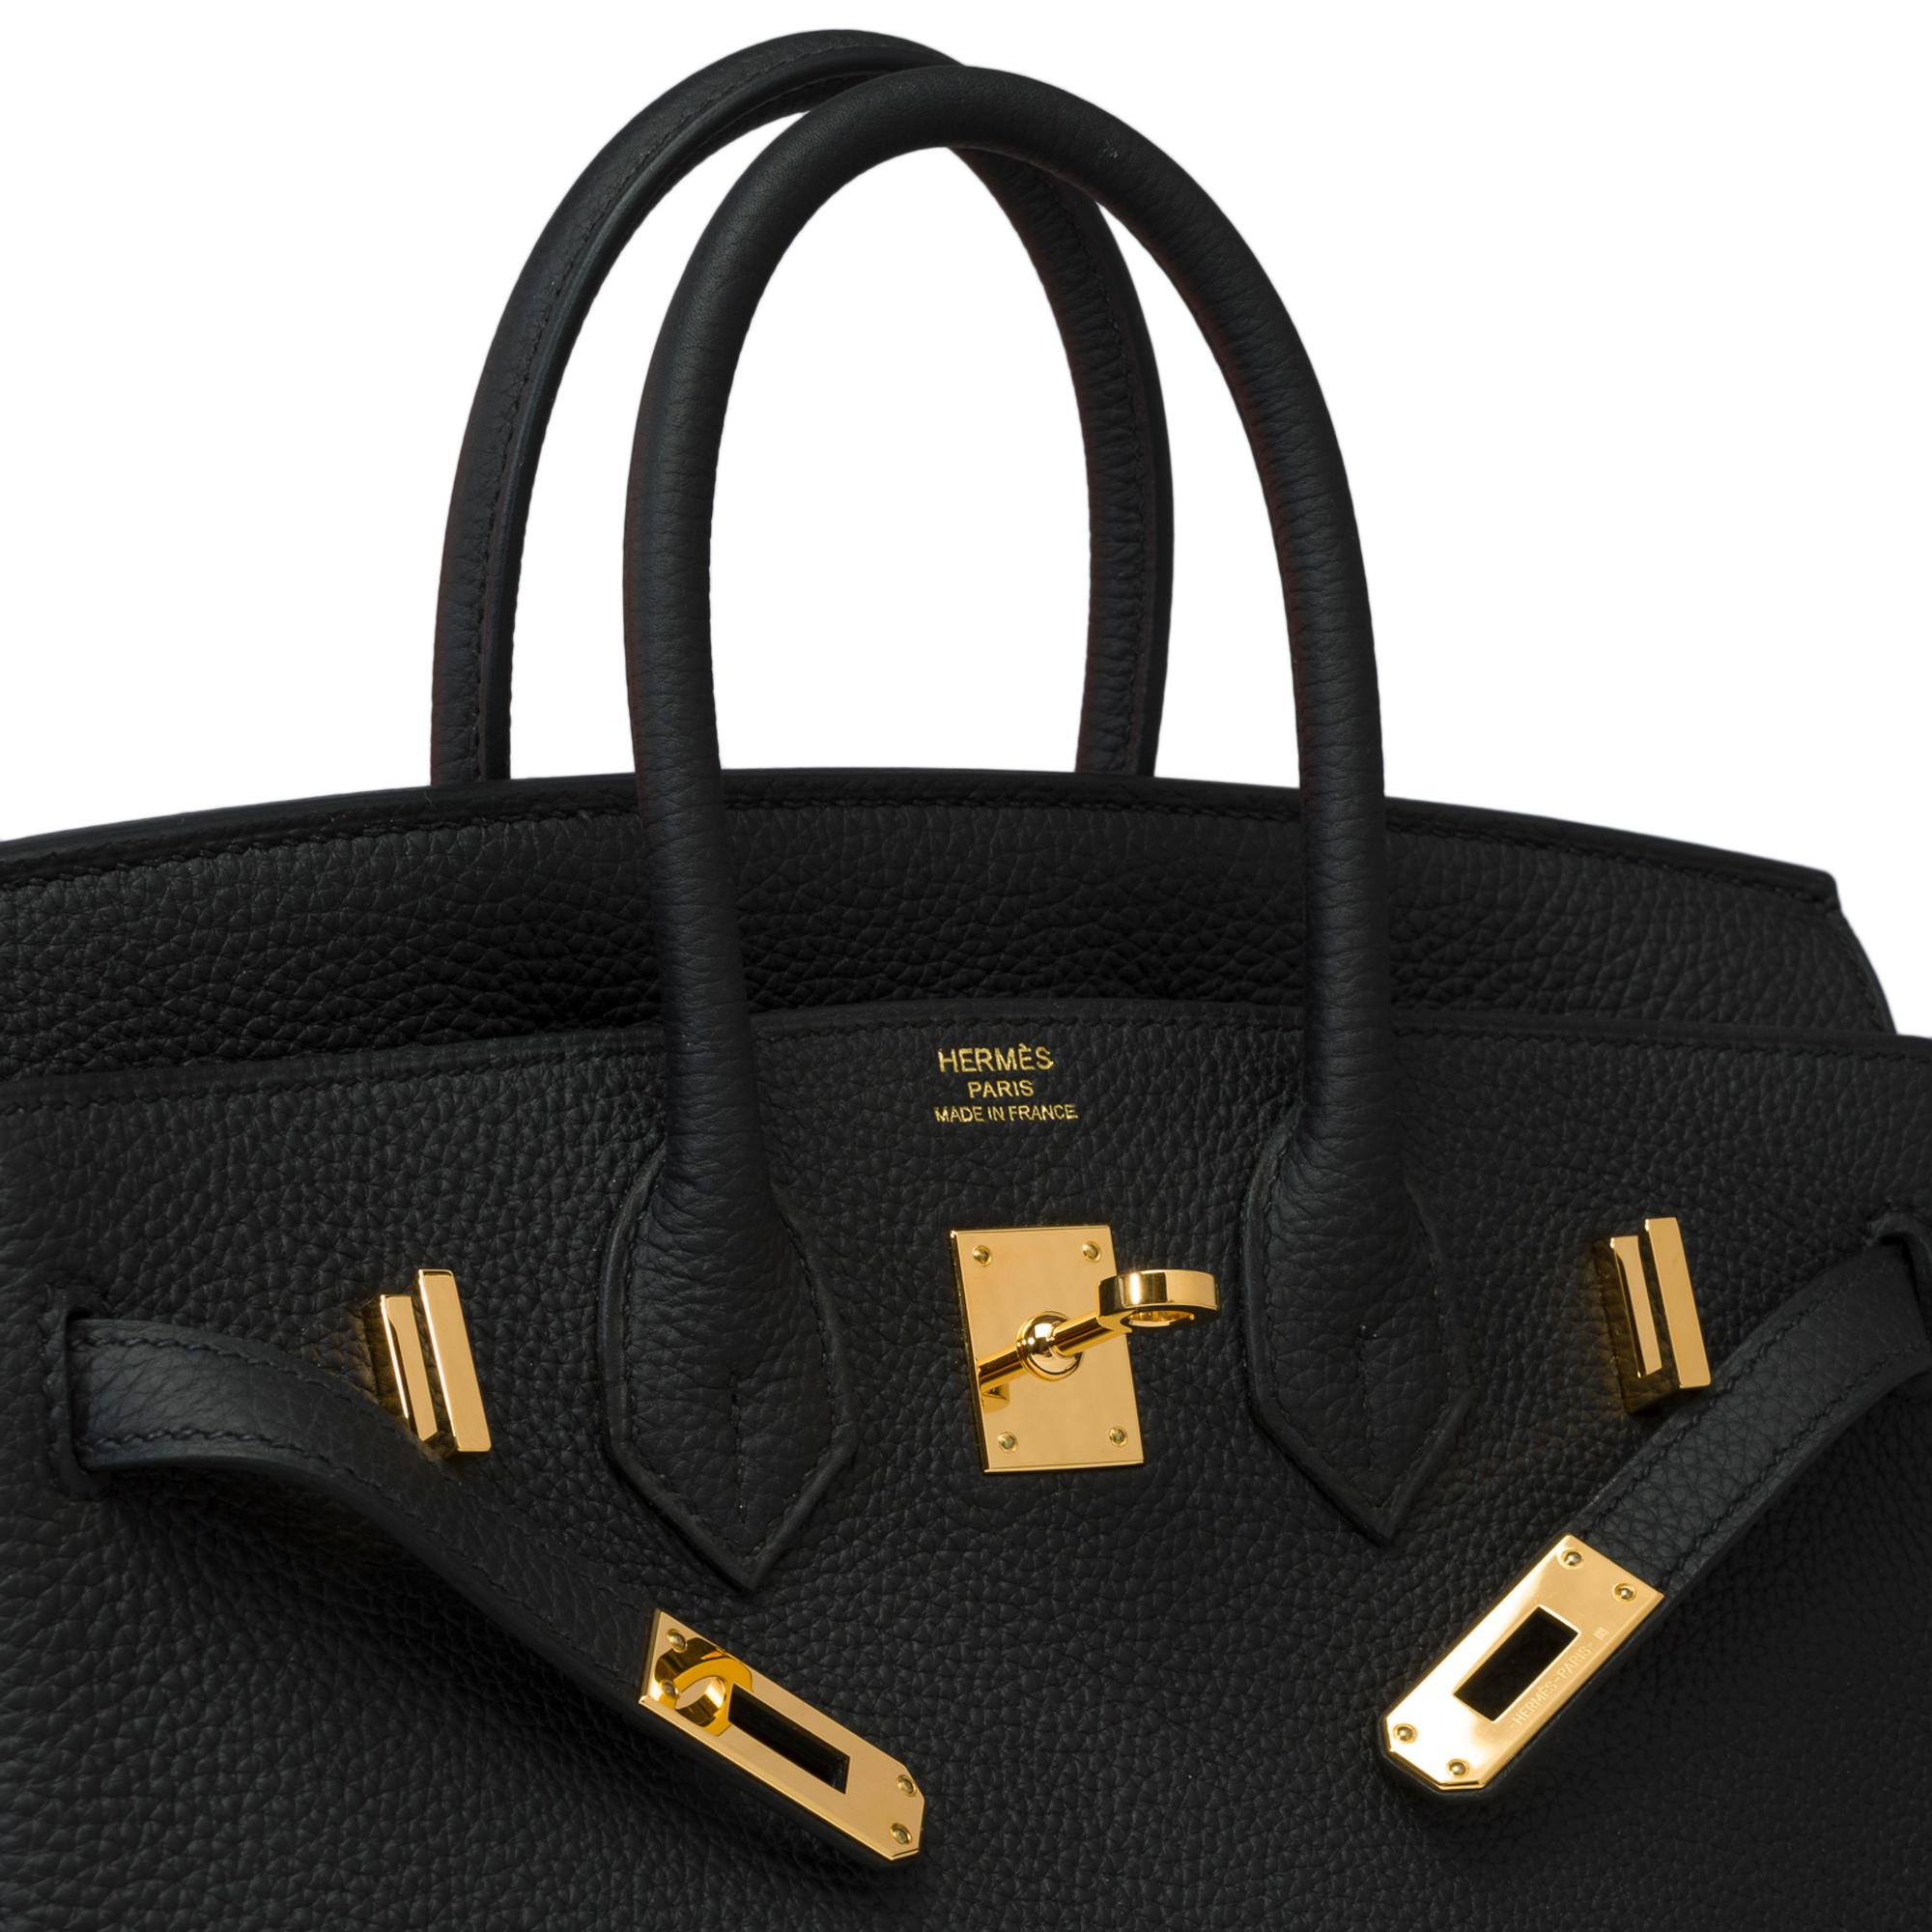 Amazing Hermes Birkin 25 handbag inBlack Togo leather, GHW For Sale 3